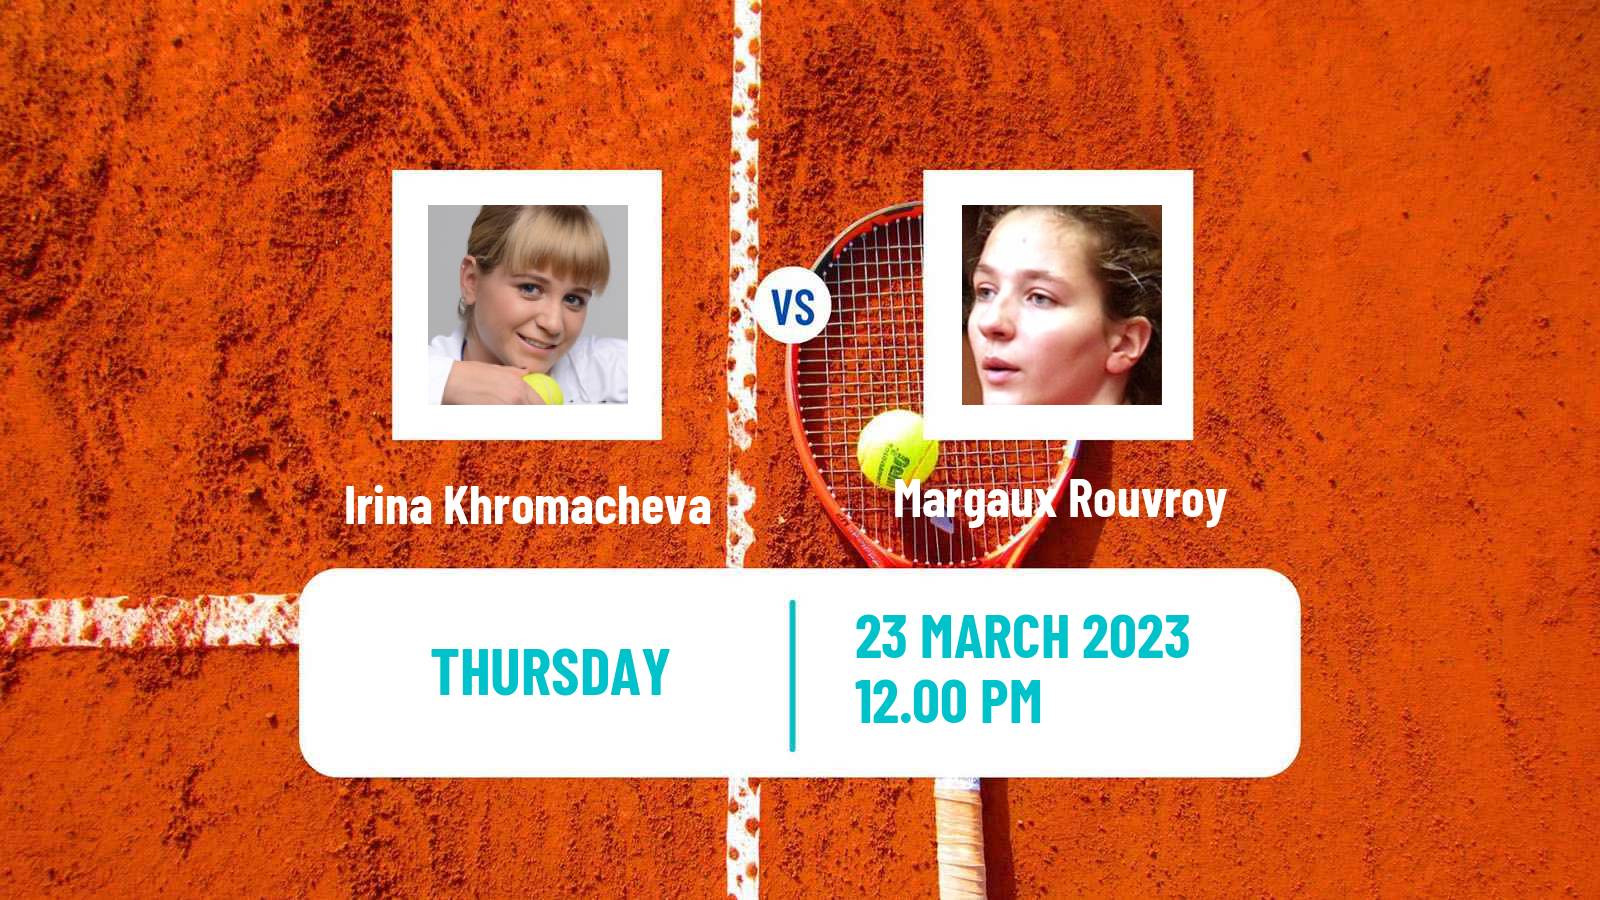 Tennis ITF Tournaments Irina Khromacheva - Margaux Rouvroy